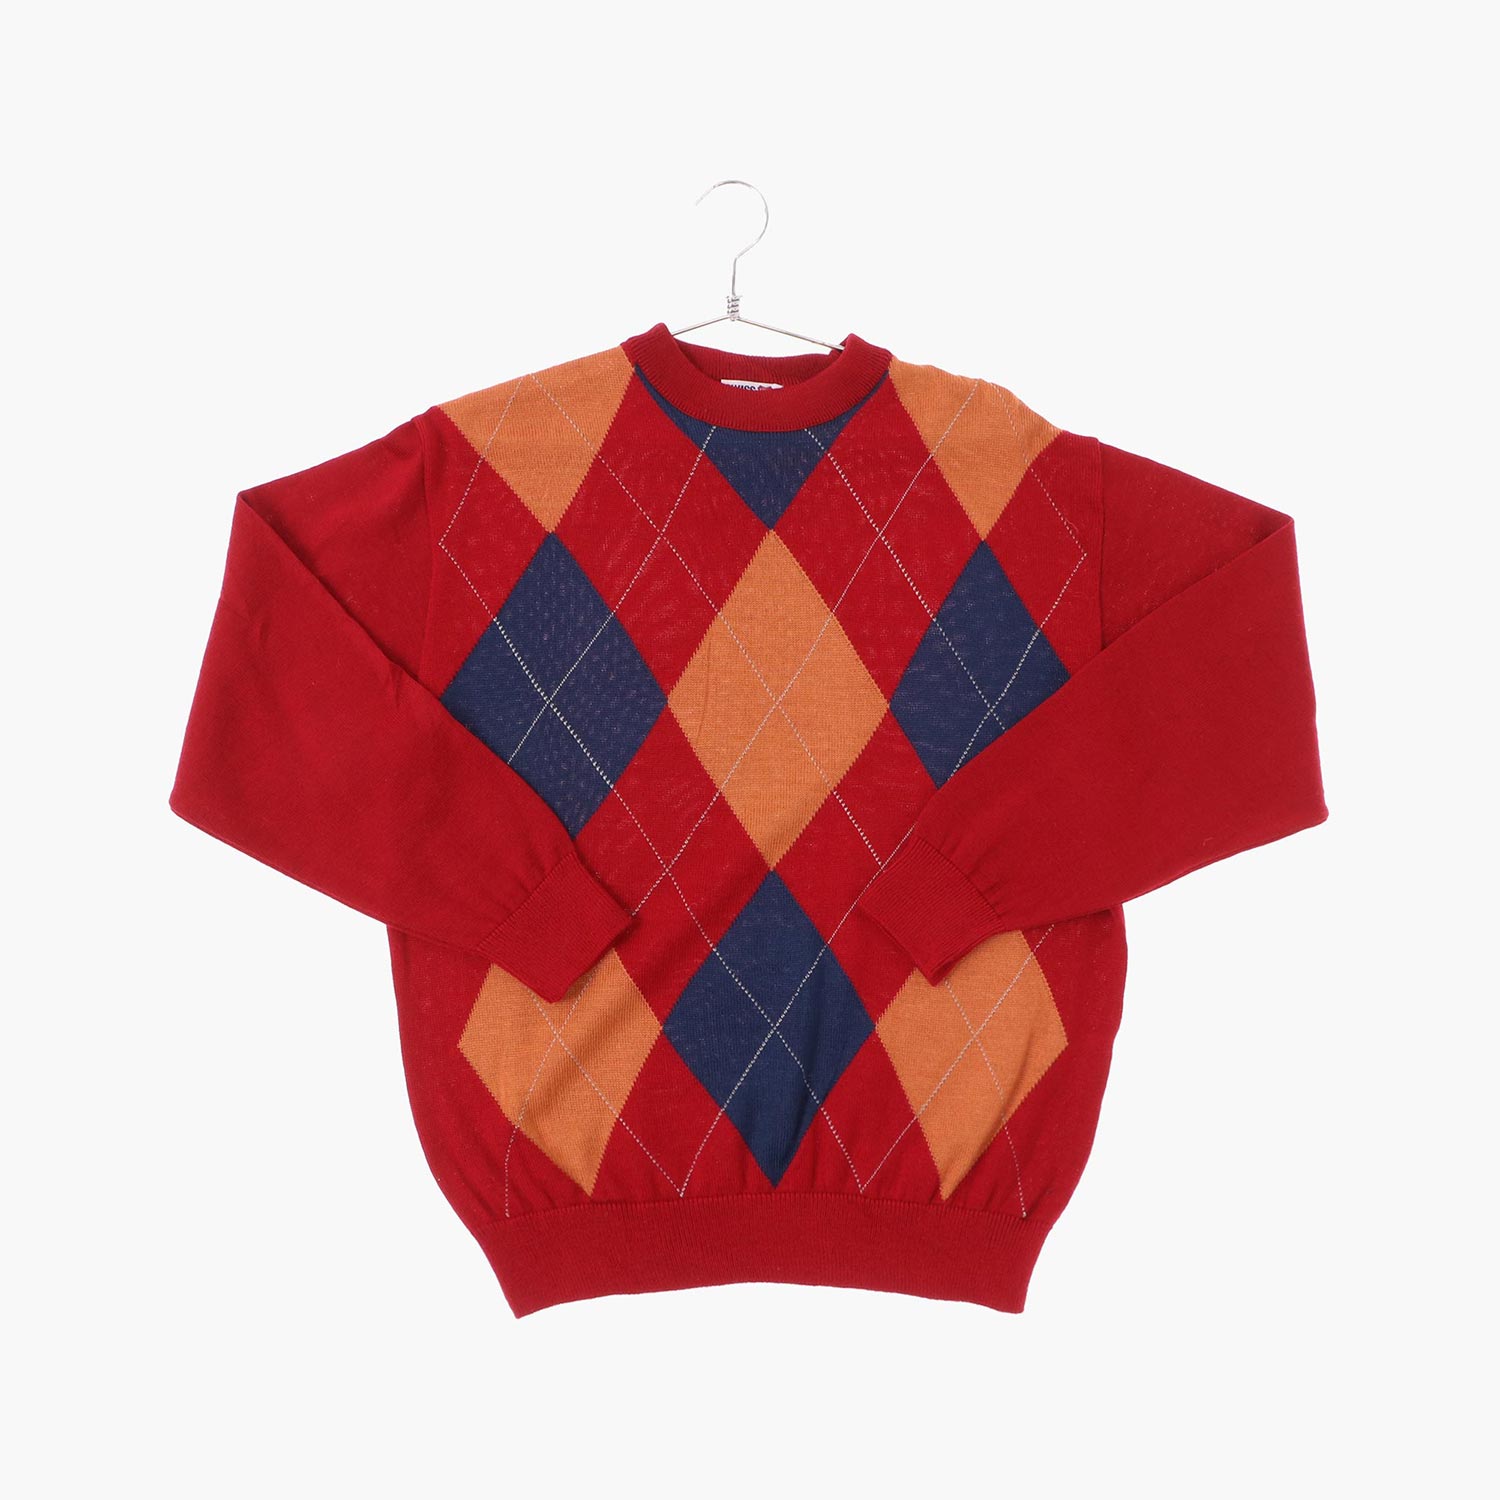 케이스위스 울 라운드 패턴 니트/스웨터 공용 M 빈티지플러스